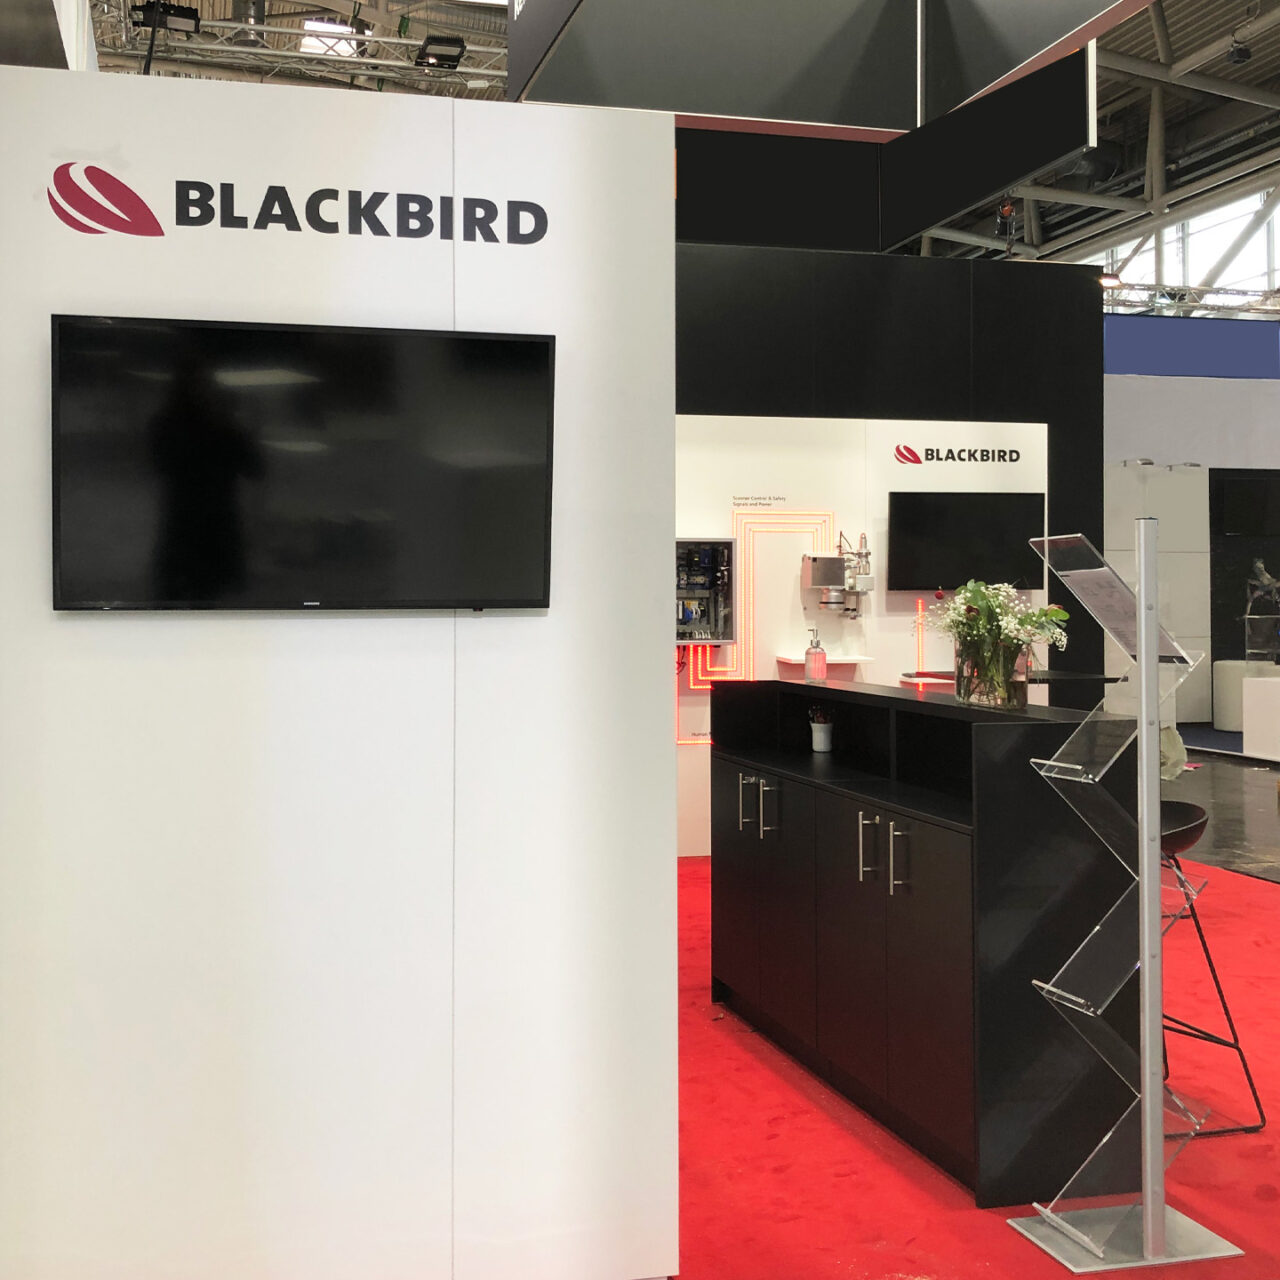 BLACKBIRD Robotersysteme auf der Laser World of Photonics 2022 in München - Messestand by eest!